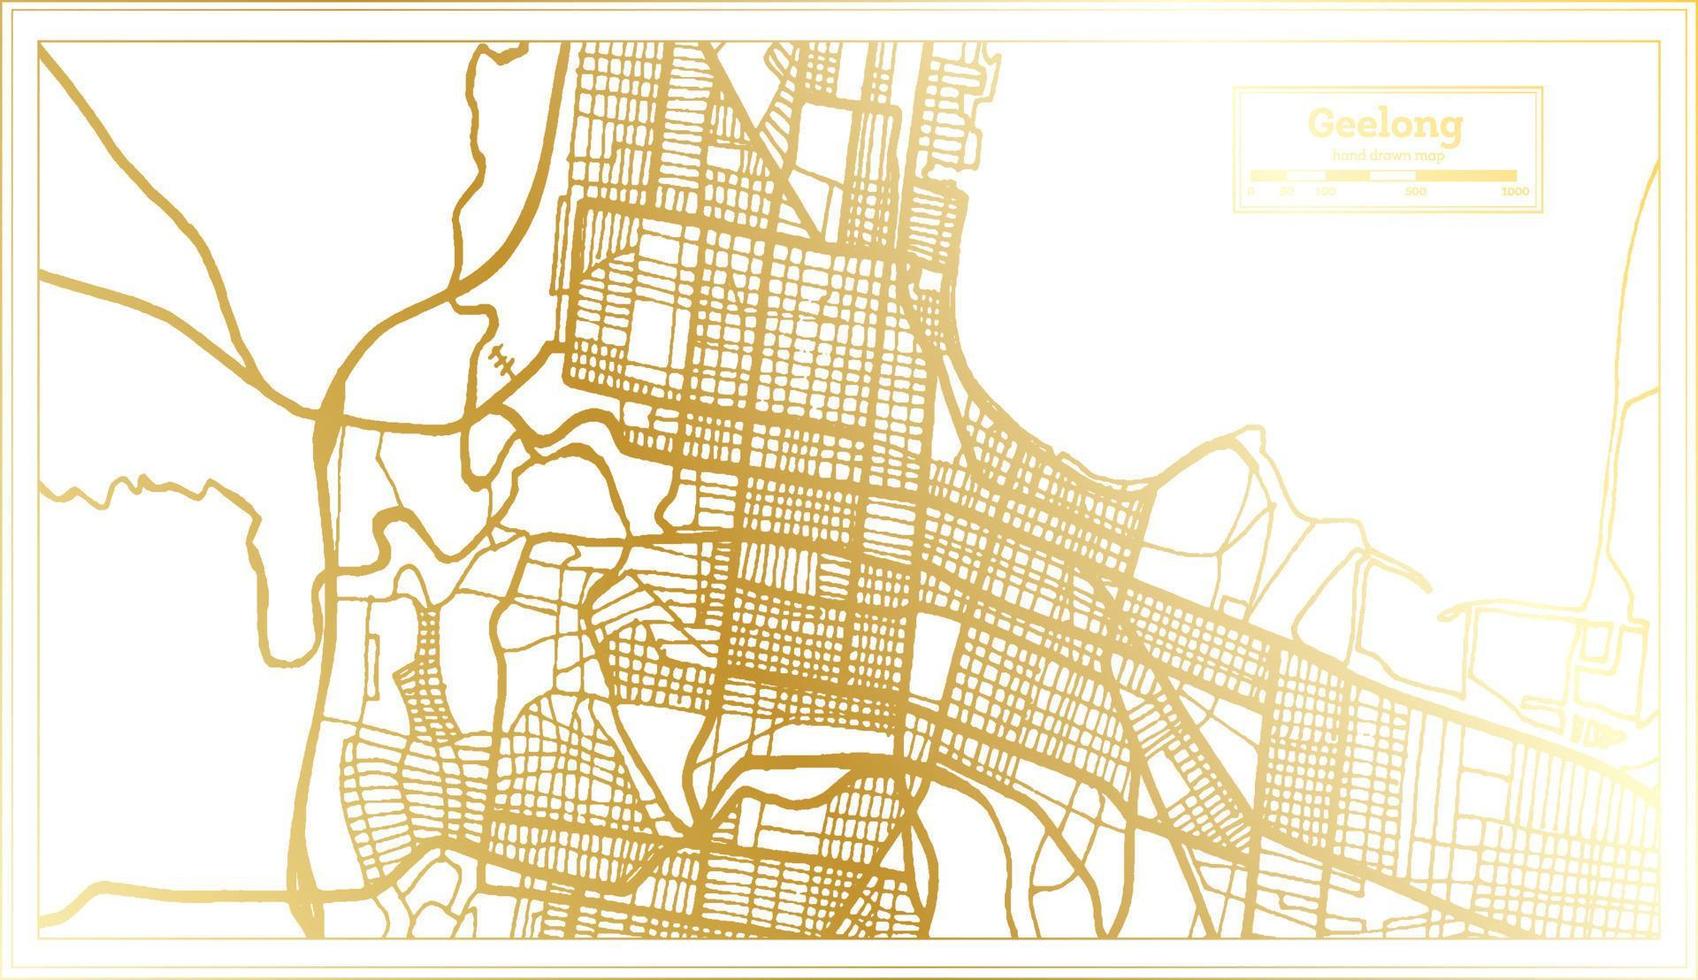 mapa de la ciudad de geelong australia en estilo retro en color dorado. esquema del mapa. vector